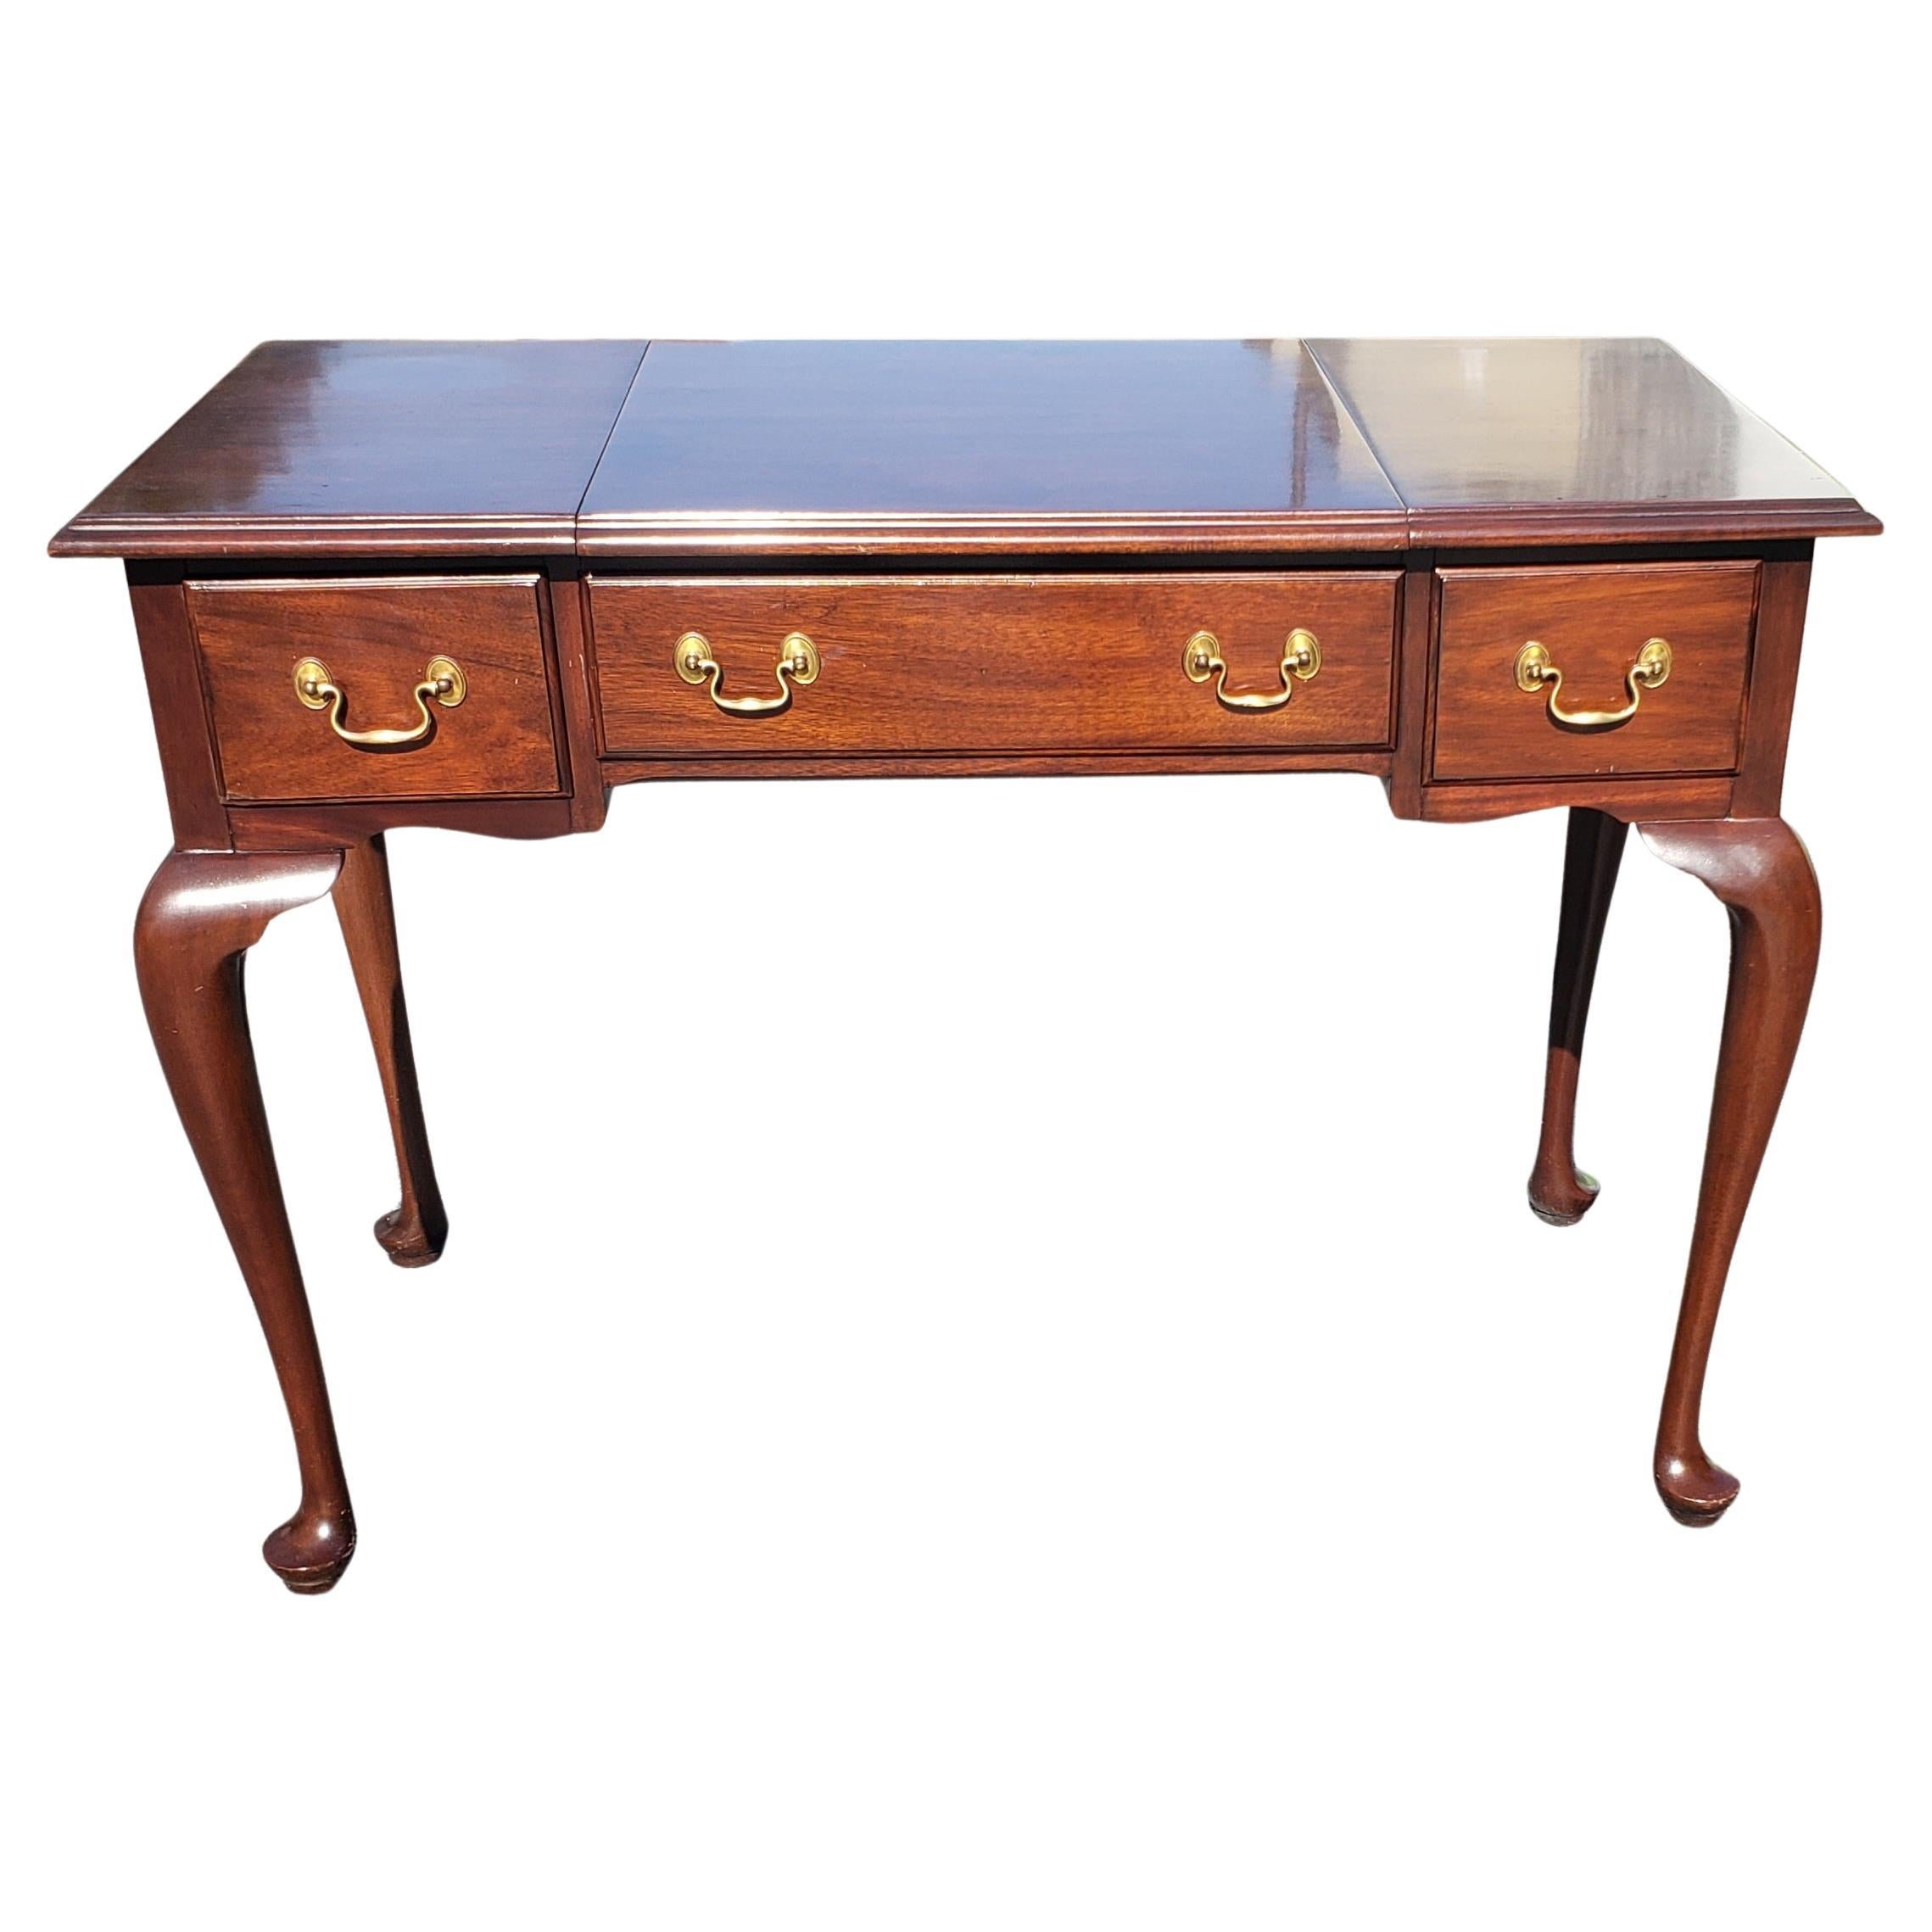 Henkel Harris Virginia Galleries mahogany vanity, dressing table or writing desk with fliptop Mirror in the Queen Anne style.
Measures 42